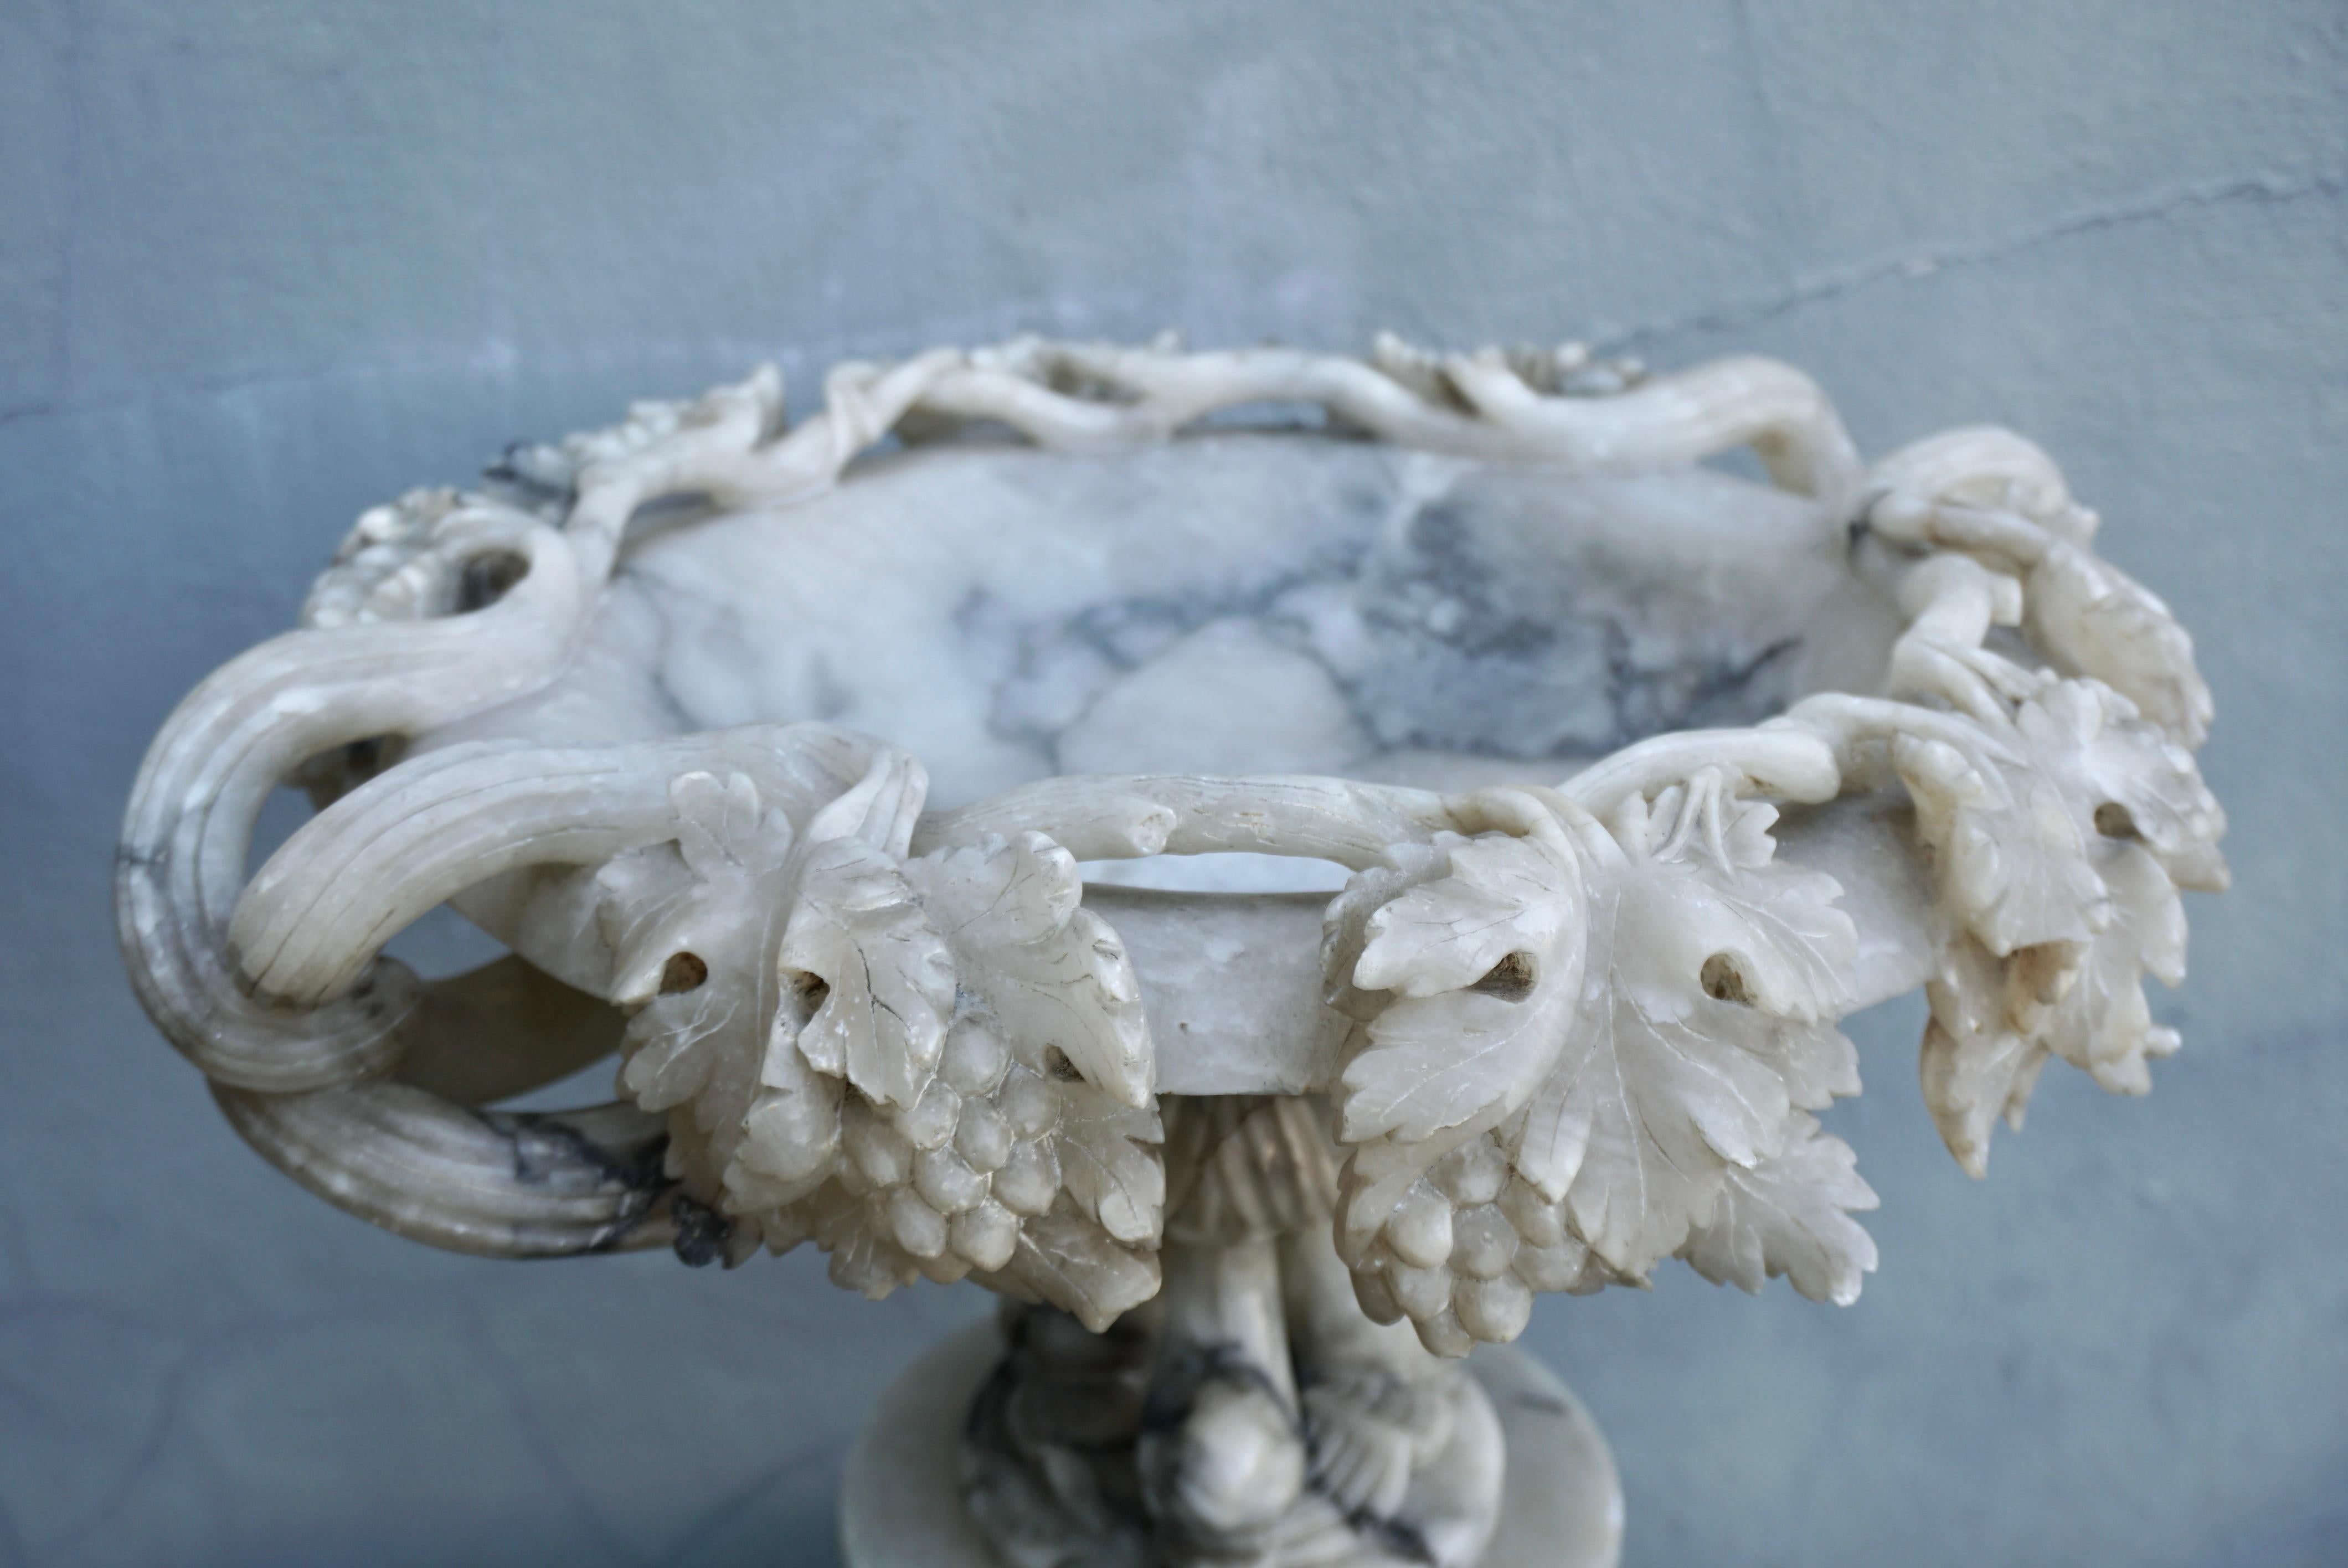 Schöne und seltene antike italienische Alabaster tazza Kompott. Mit geschnitzten Traubenblättern um die Schale und Delphin-Sockel.

Dekorieren Sie einen Esstisch oder eine Konsole mit diesem eleganten antiken Tafelaufsatz. Das um 1900 in Italien